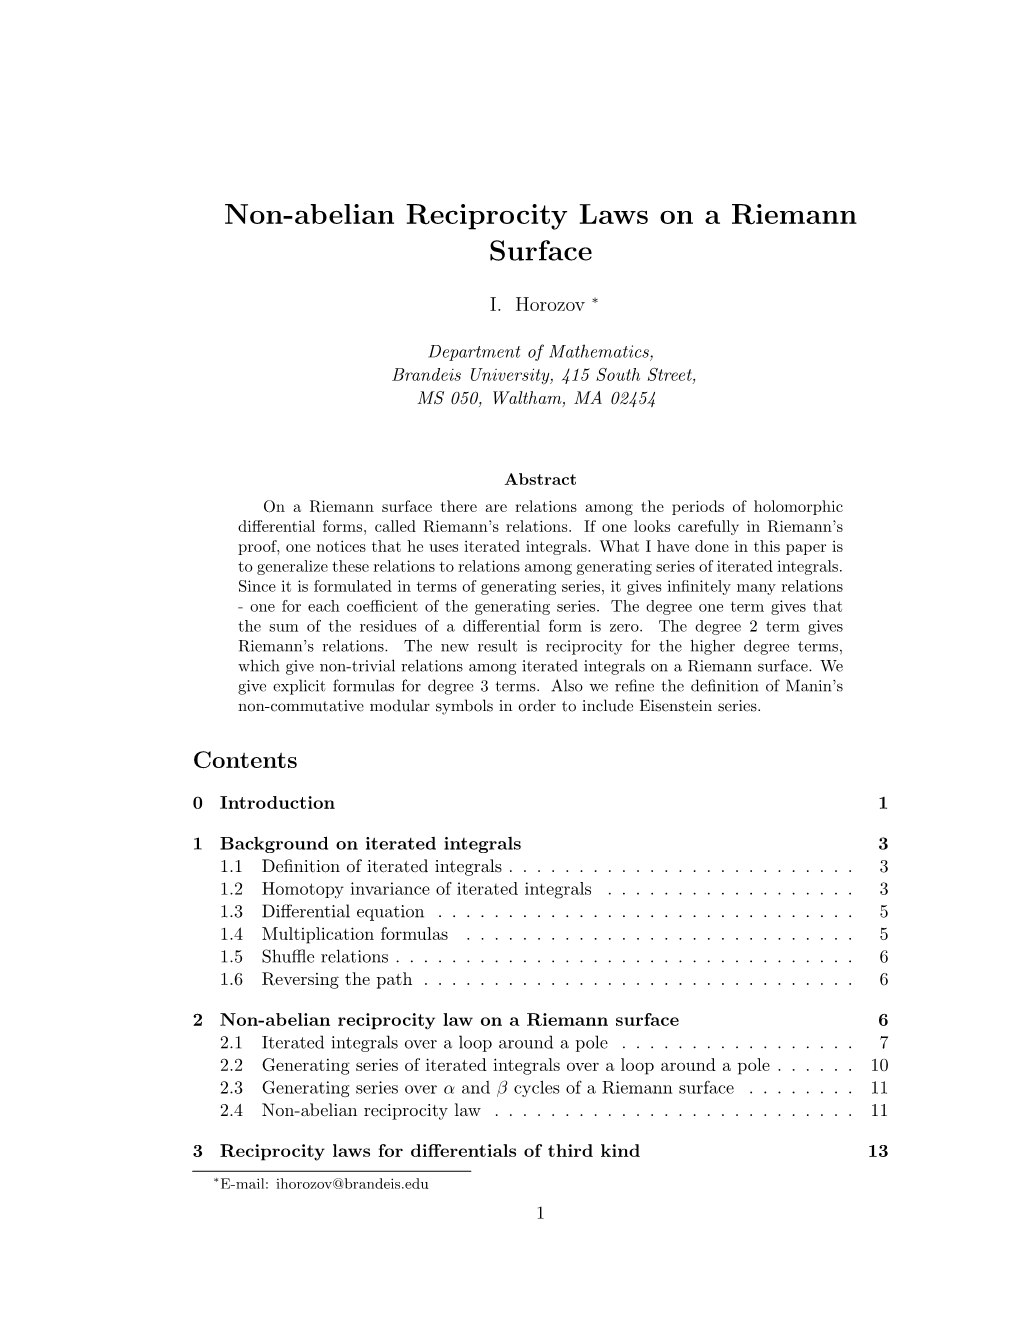 Non-Abelian Reciprocity Laws on a Riemann Surface